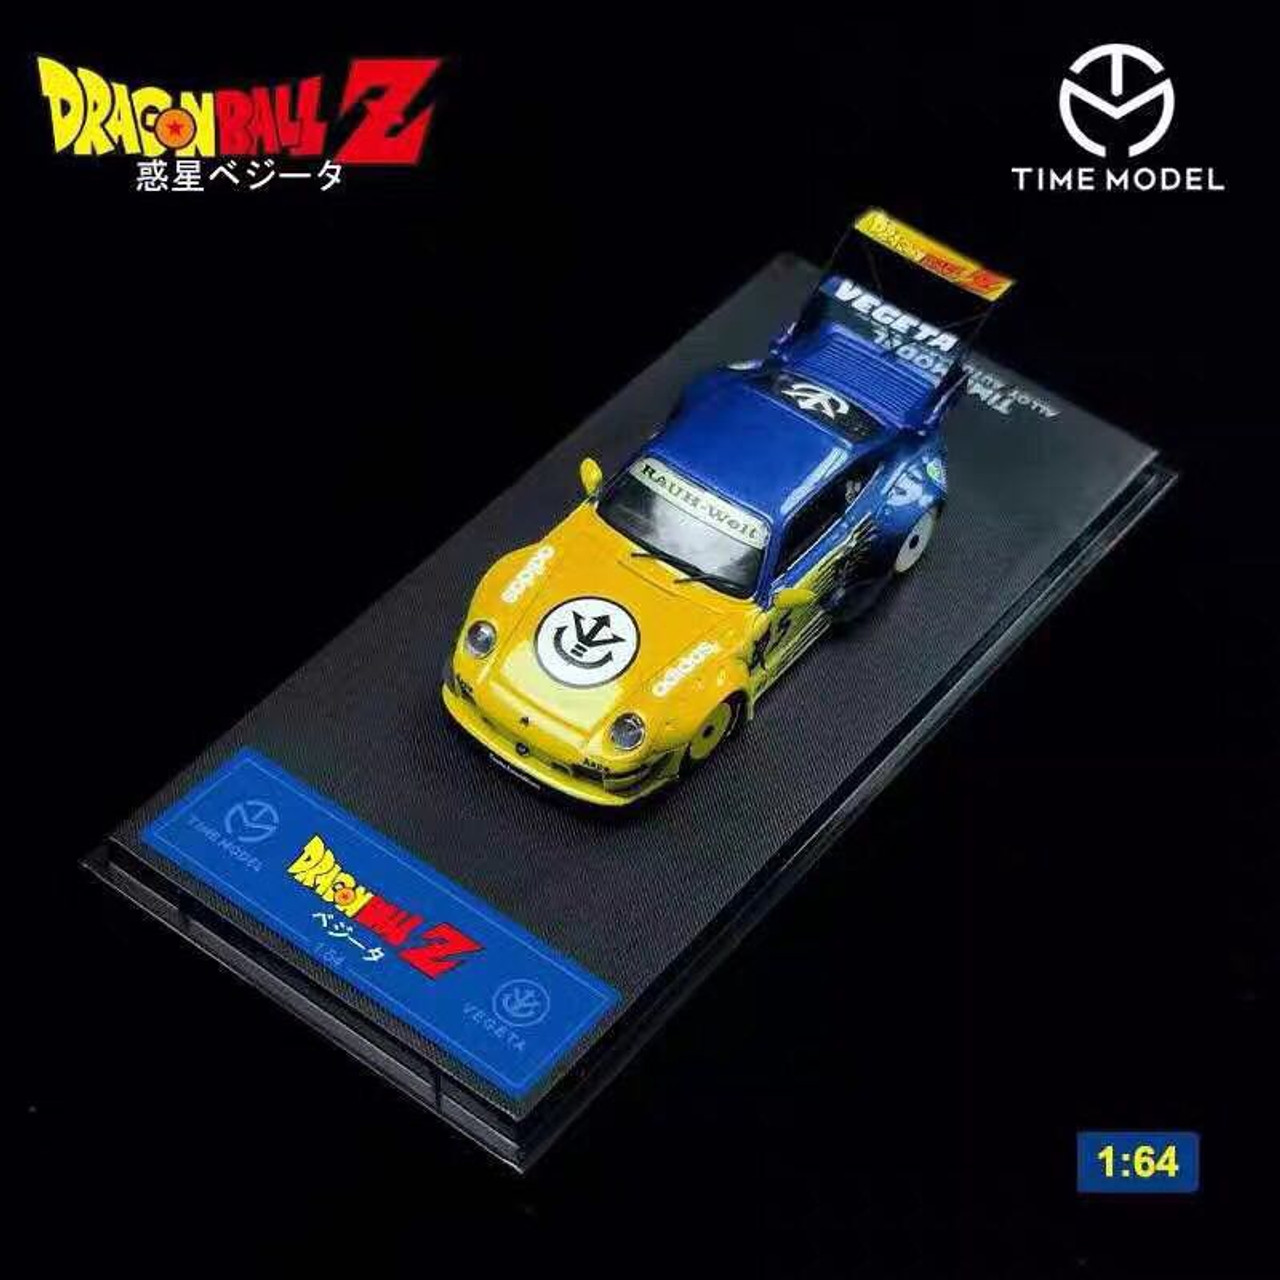 1/64 Time Model Porsche 911 993 RWB Dragon Ball Z Vegeta Edition Car Model